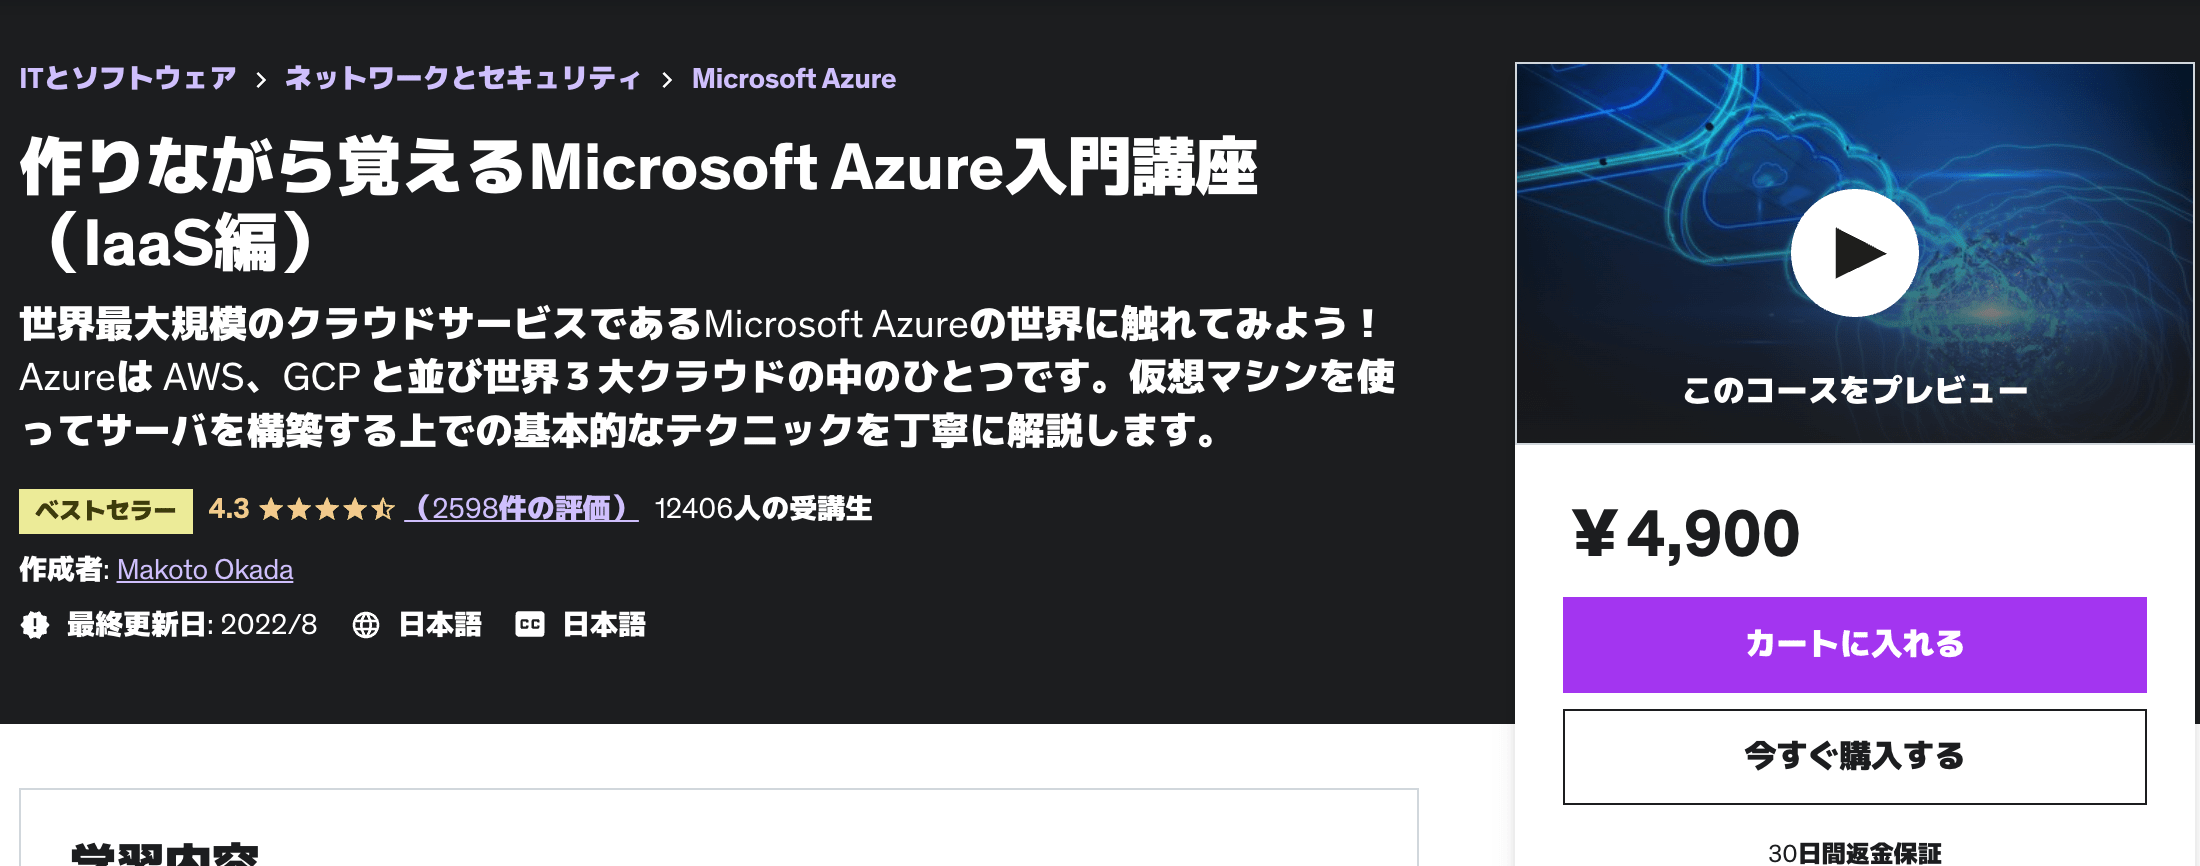 作りながら覚えるMicrosoft Azure入門講座（IaaS編）